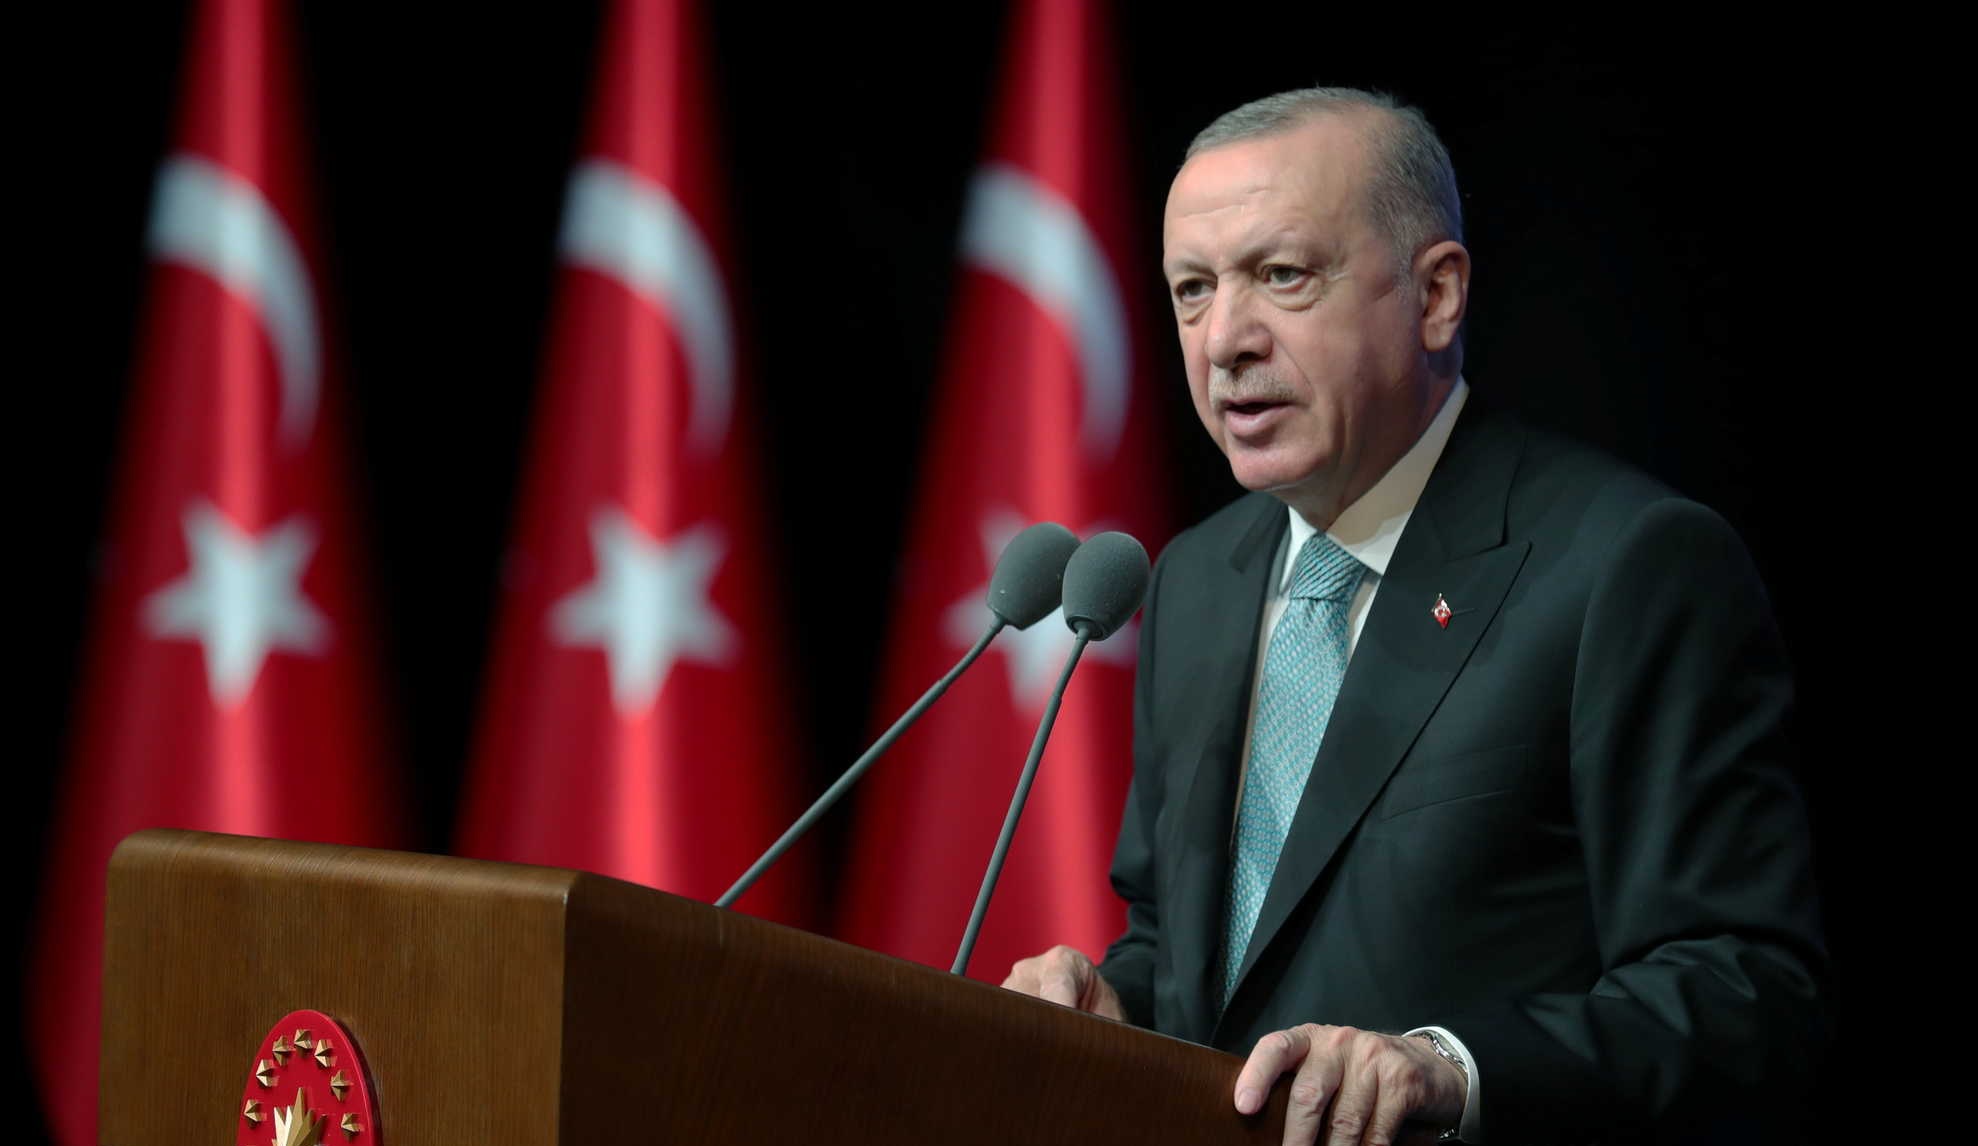  Turquía: Debate sobre si Erdogan podrá presentarse legalmente a las elecciones de 2023